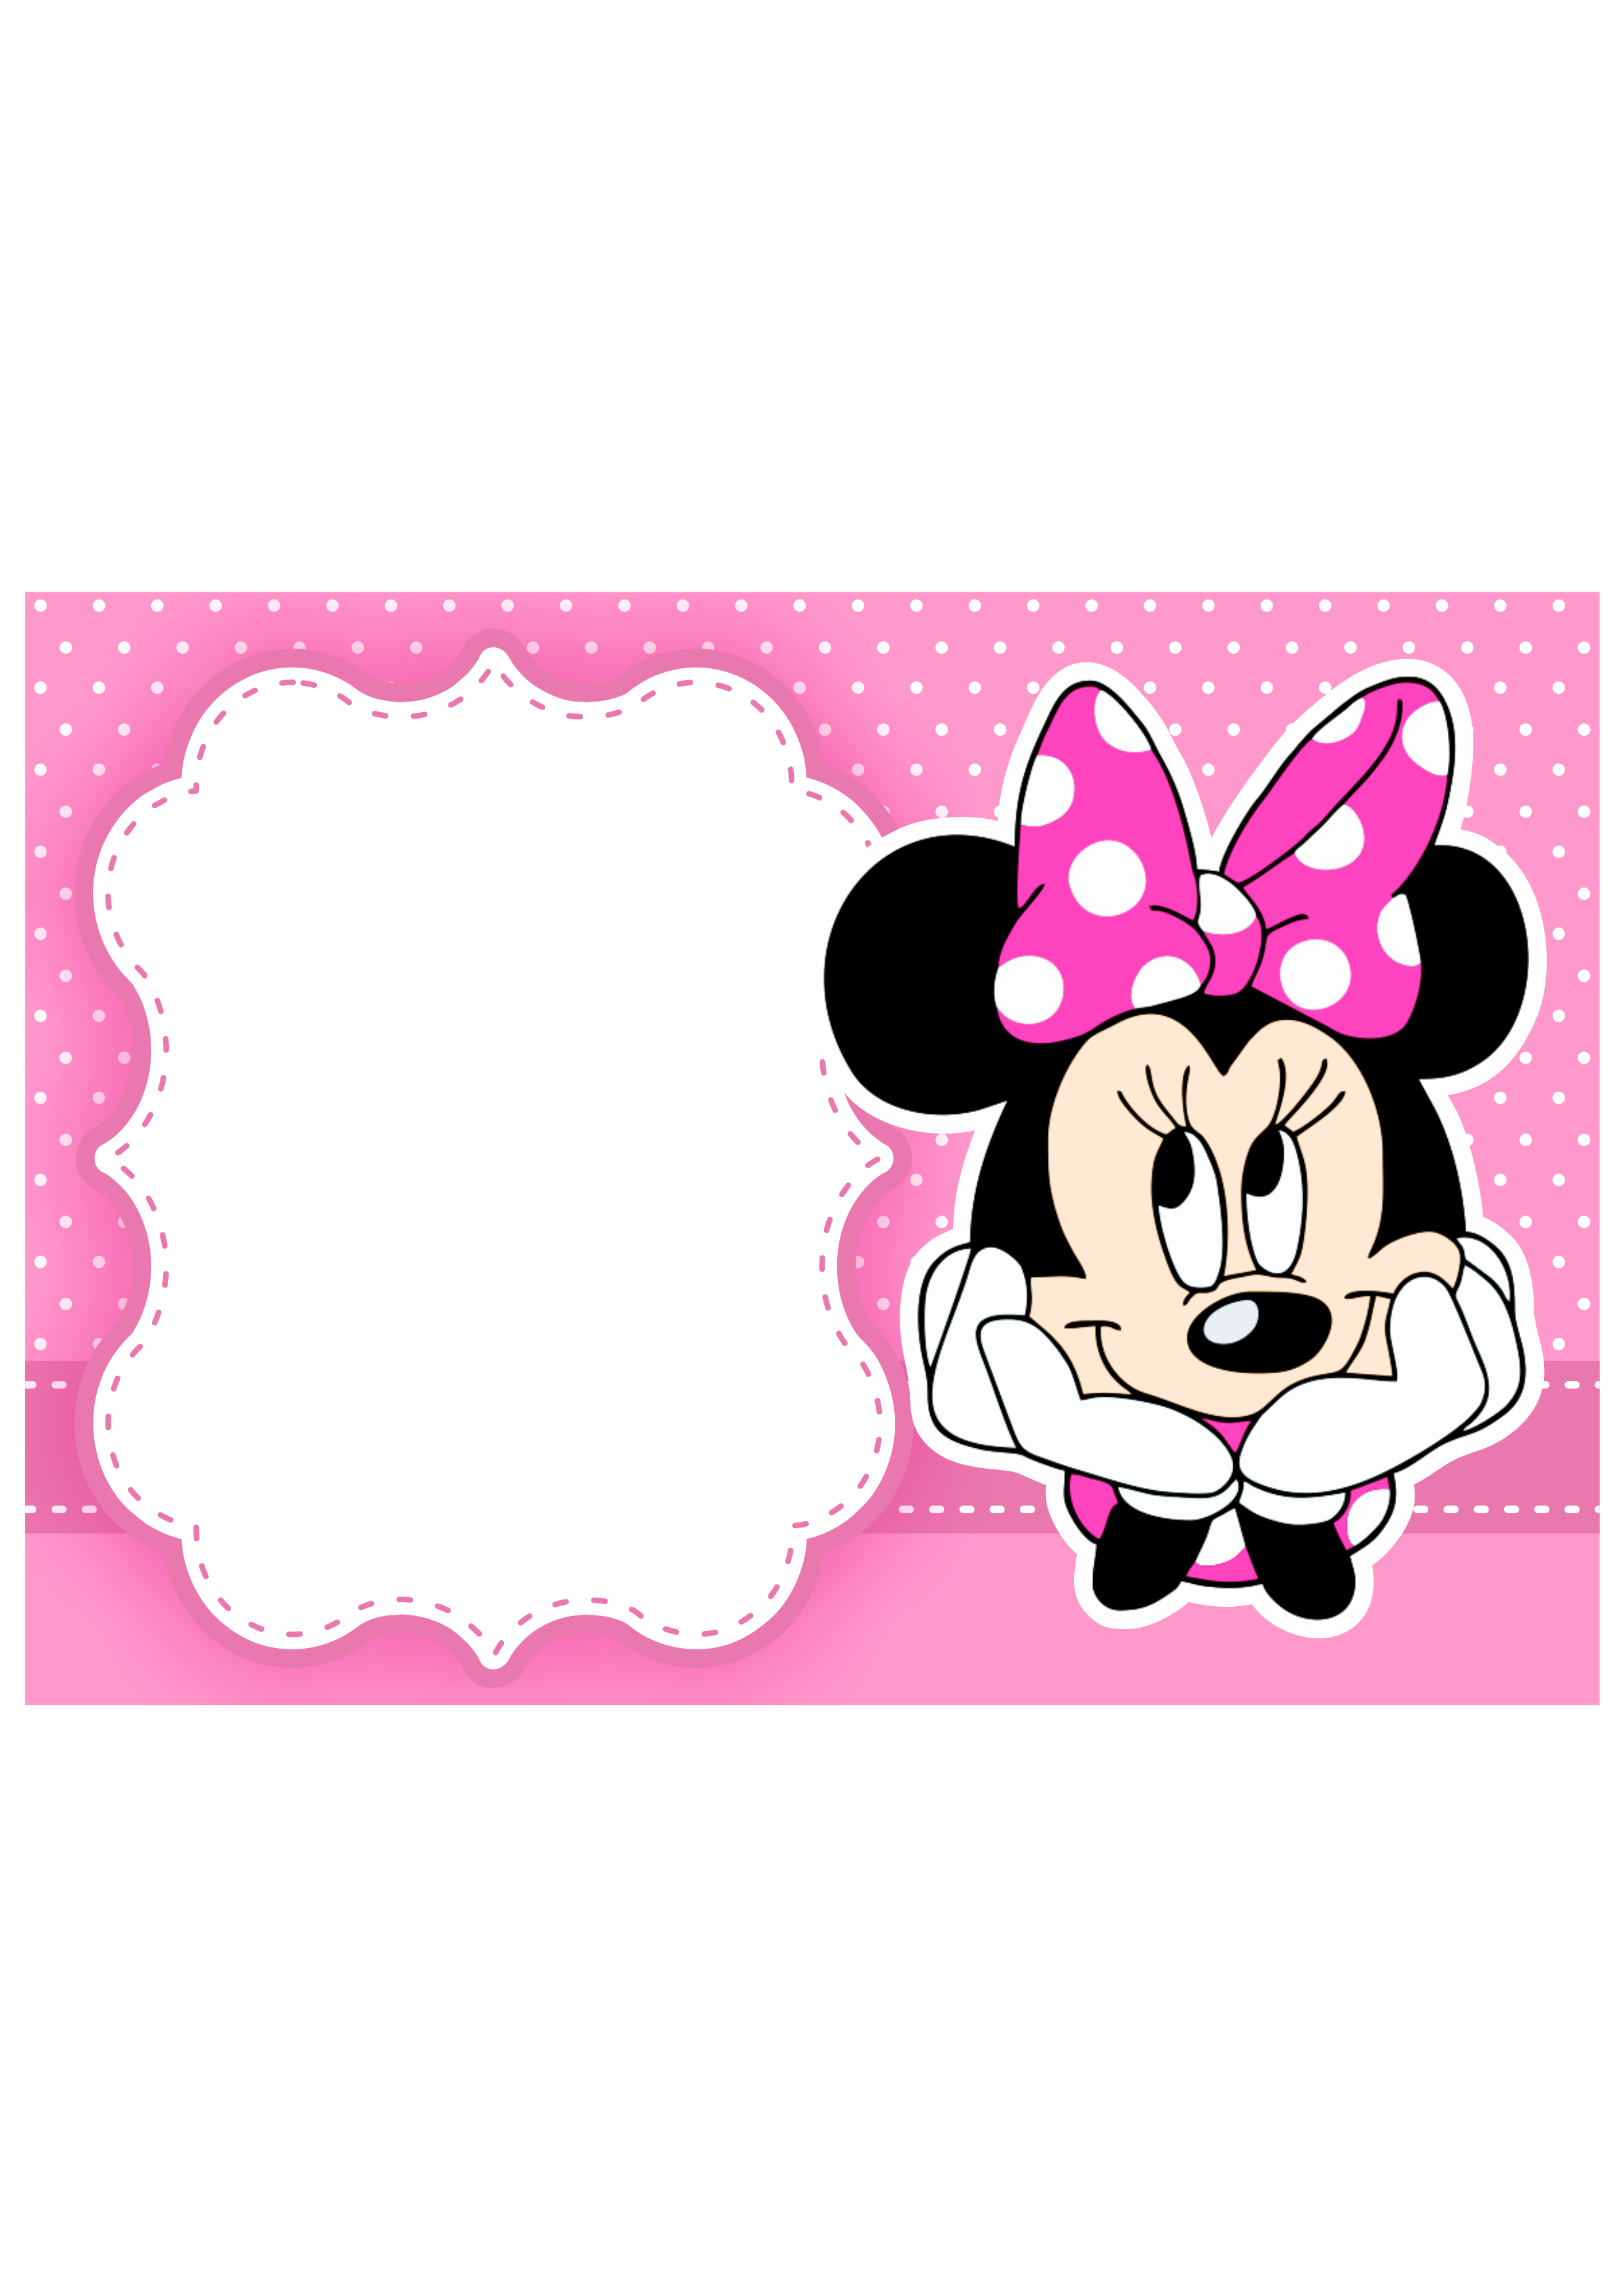 Convite digital Minnie rosa grátis pronto para editar e imprimir aniversário infantil menina png